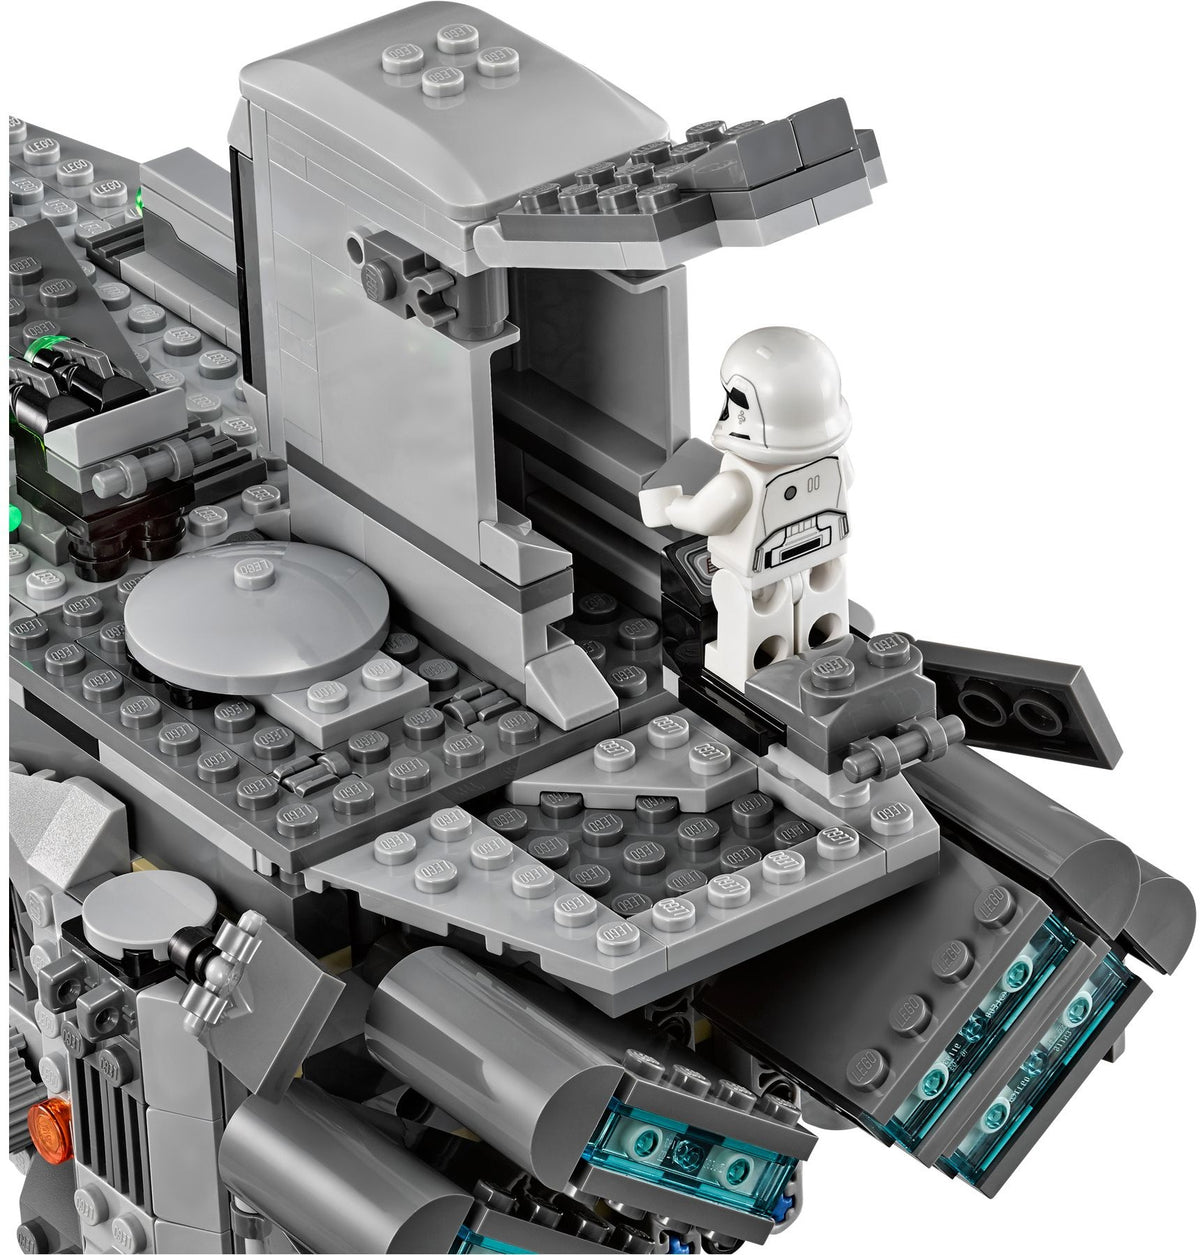 LEGO Star Wars 75103 First Order Transporter